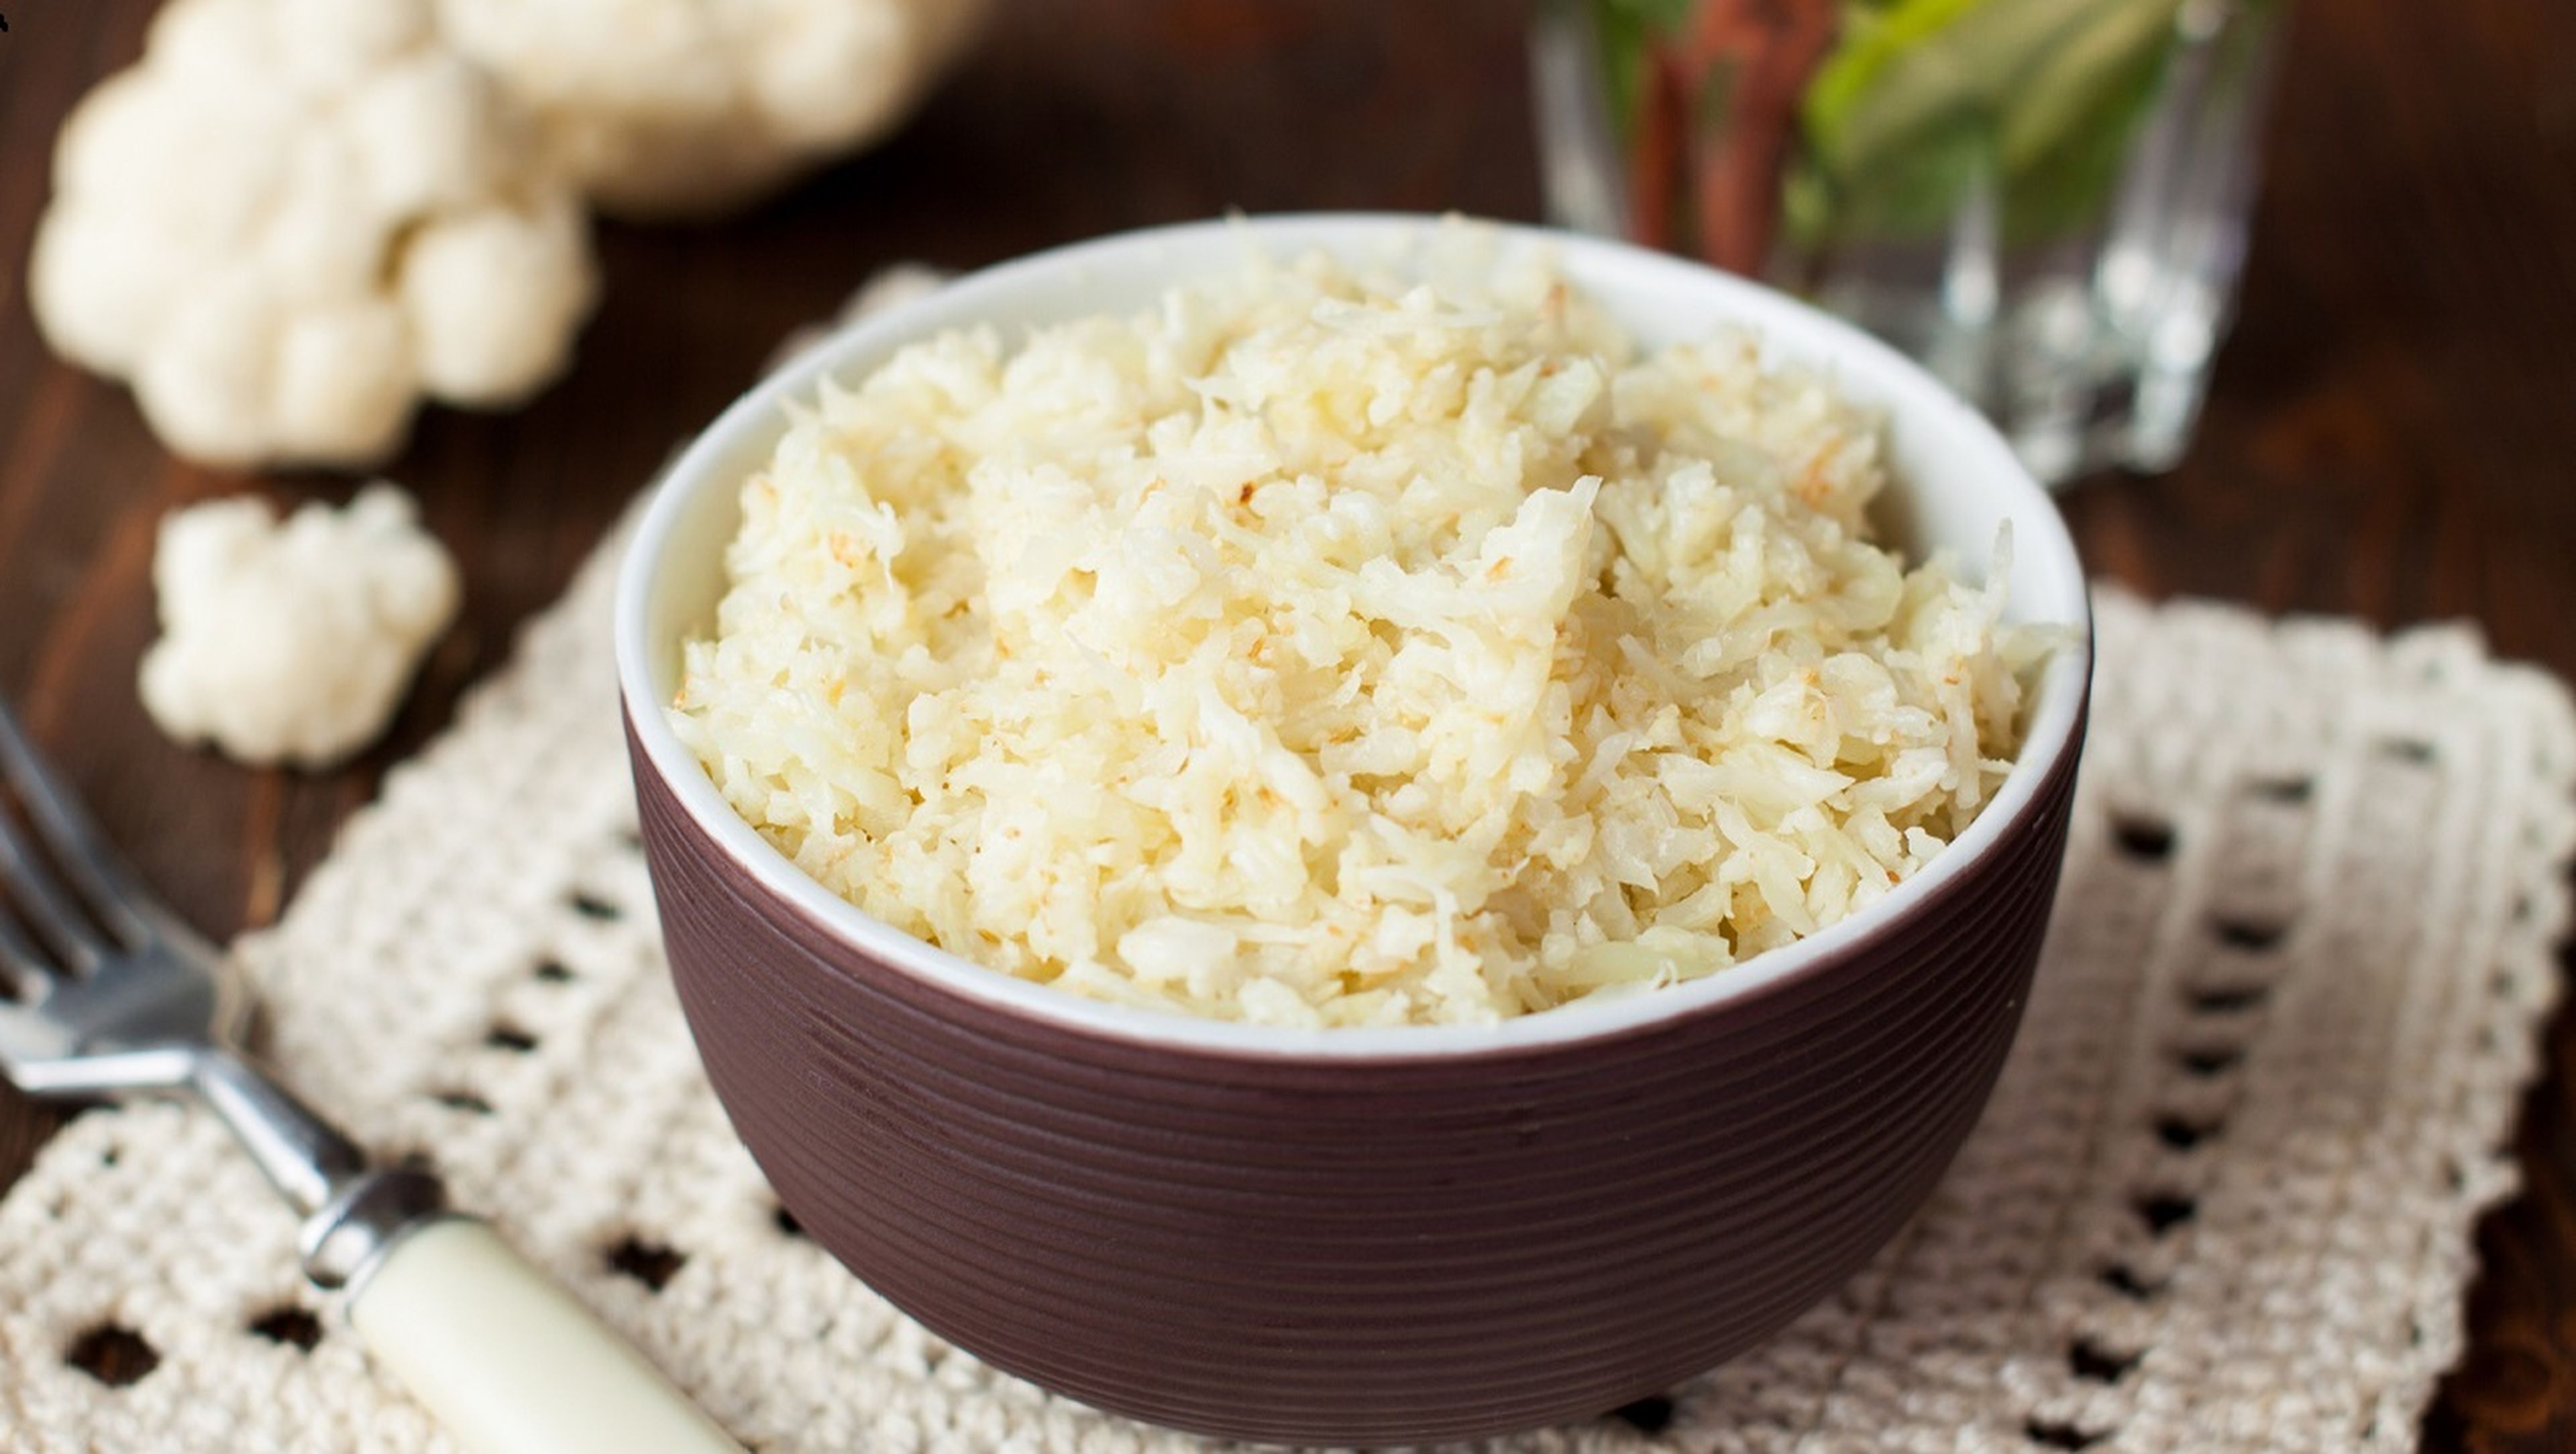 El arroz puede originar ciertas toxinas